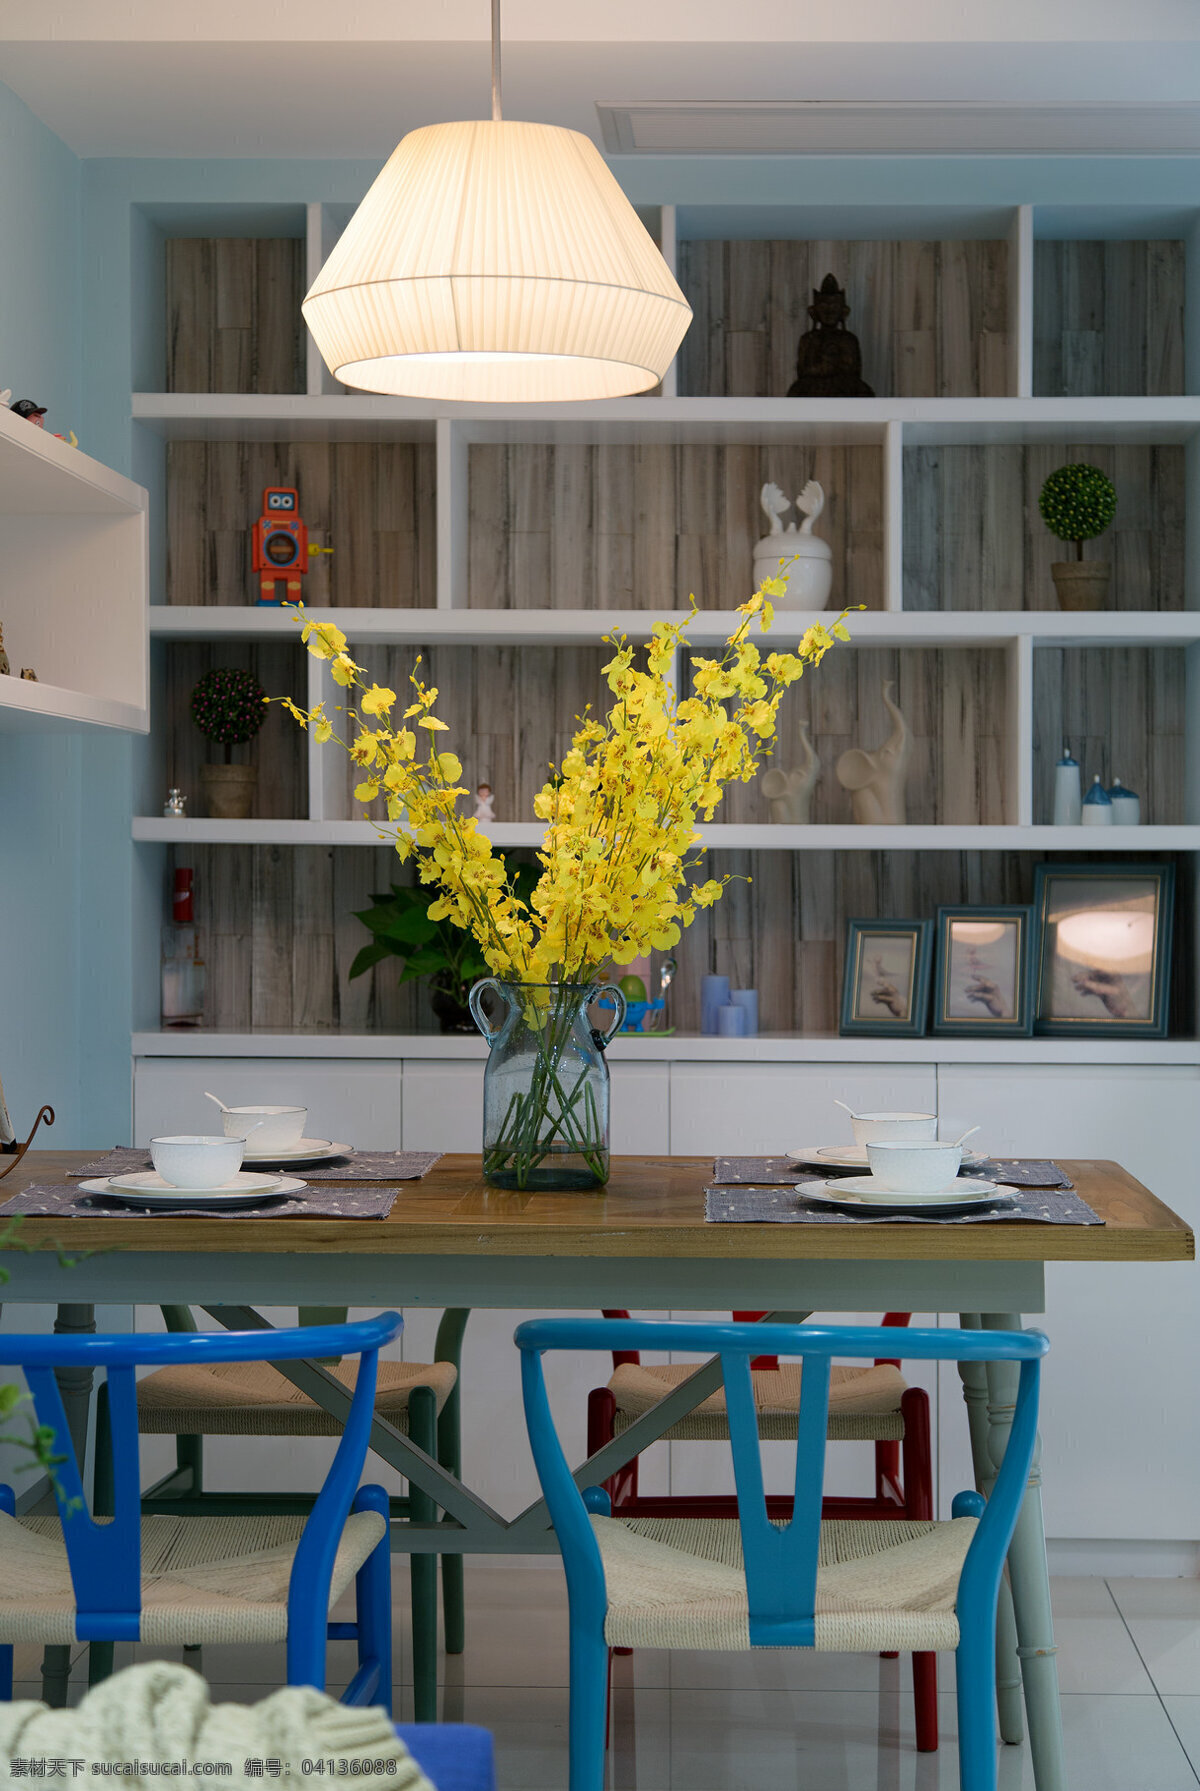 现代 时尚 浅蓝色 背景 墙 室内装修 效果图 客厅装修 蓝色展示架 木制餐桌